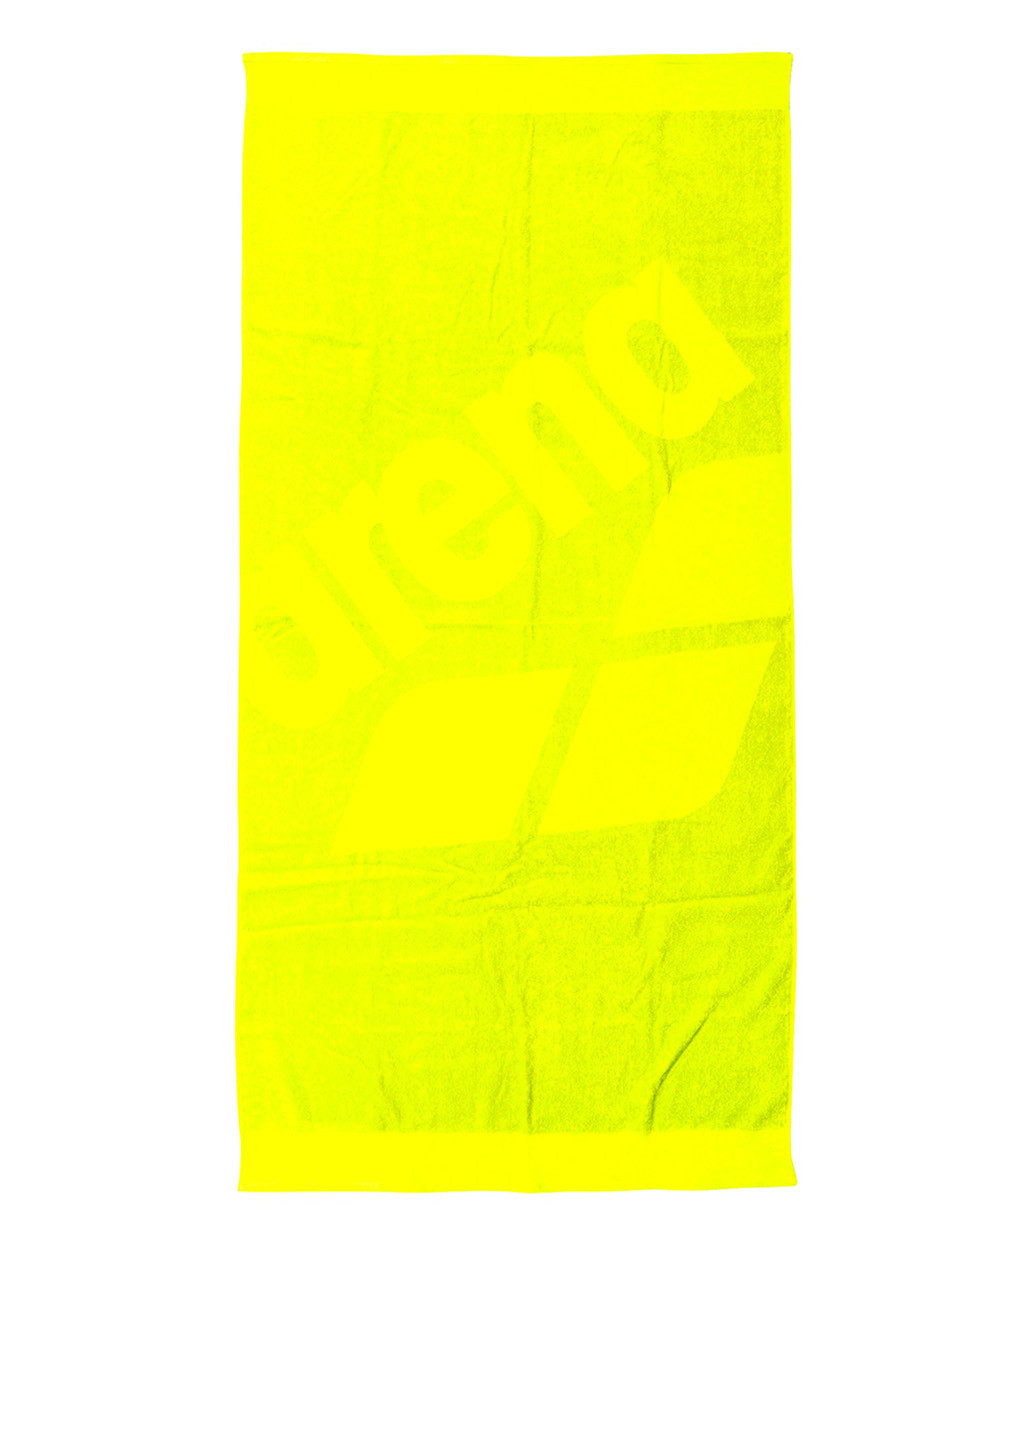 Arena рушник логотип кислотно-жовтий виробництво - Туреччина